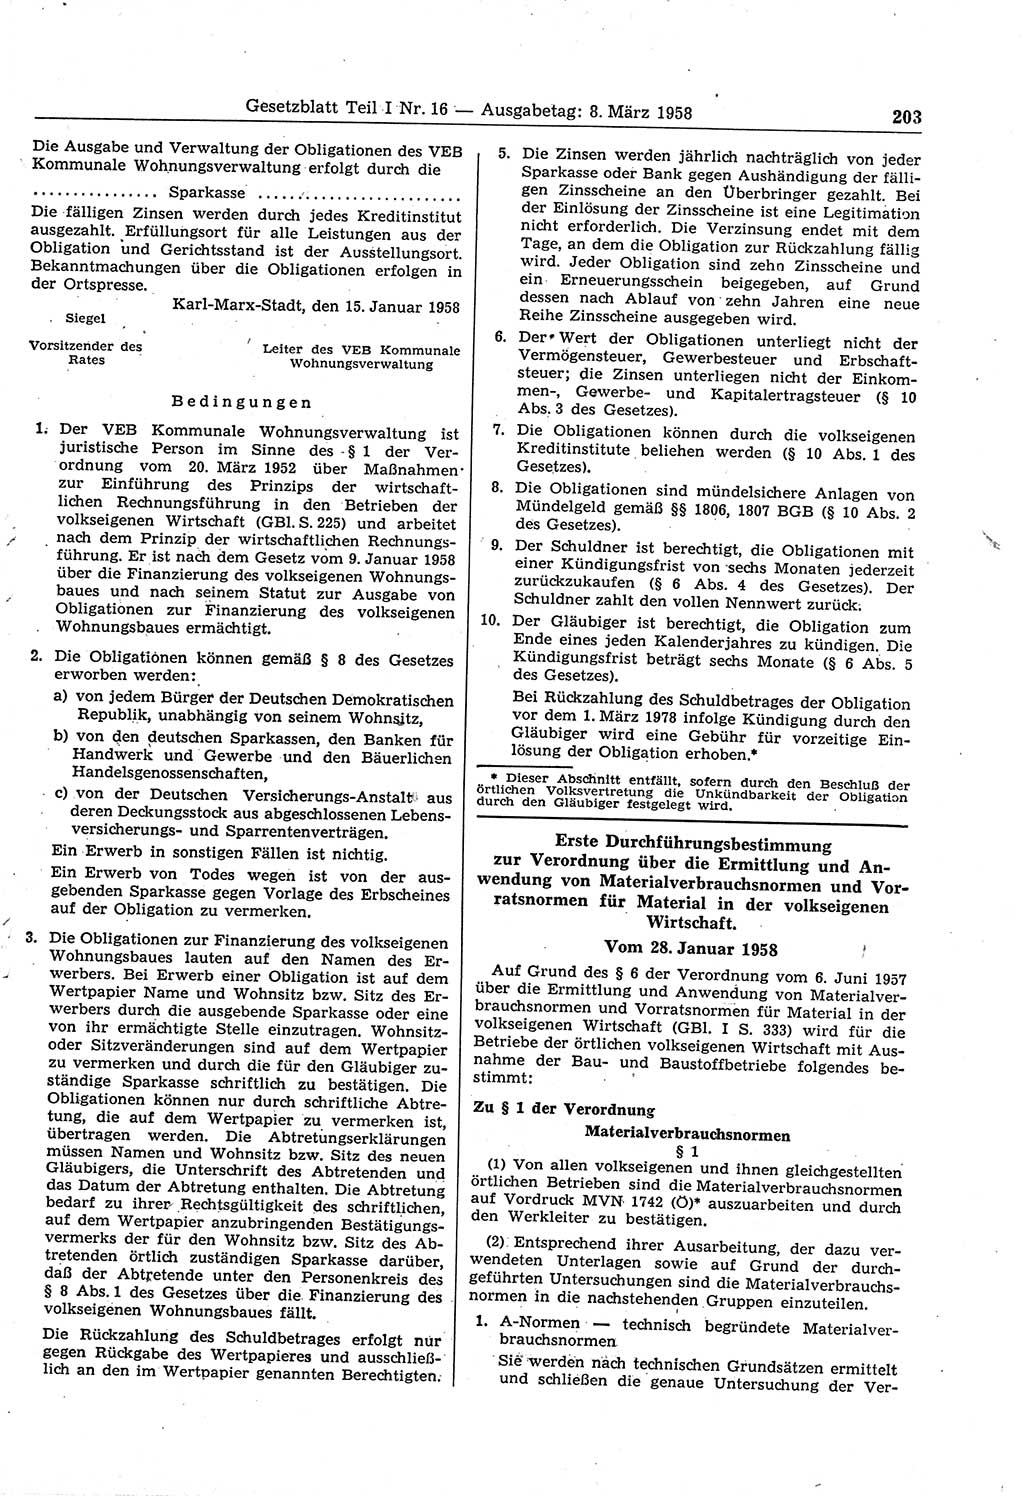 Gesetzblatt (GBl.) der Deutschen Demokratischen Republik (DDR) Teil Ⅰ 1958, Seite 203 (GBl. DDR Ⅰ 1958, S. 203)